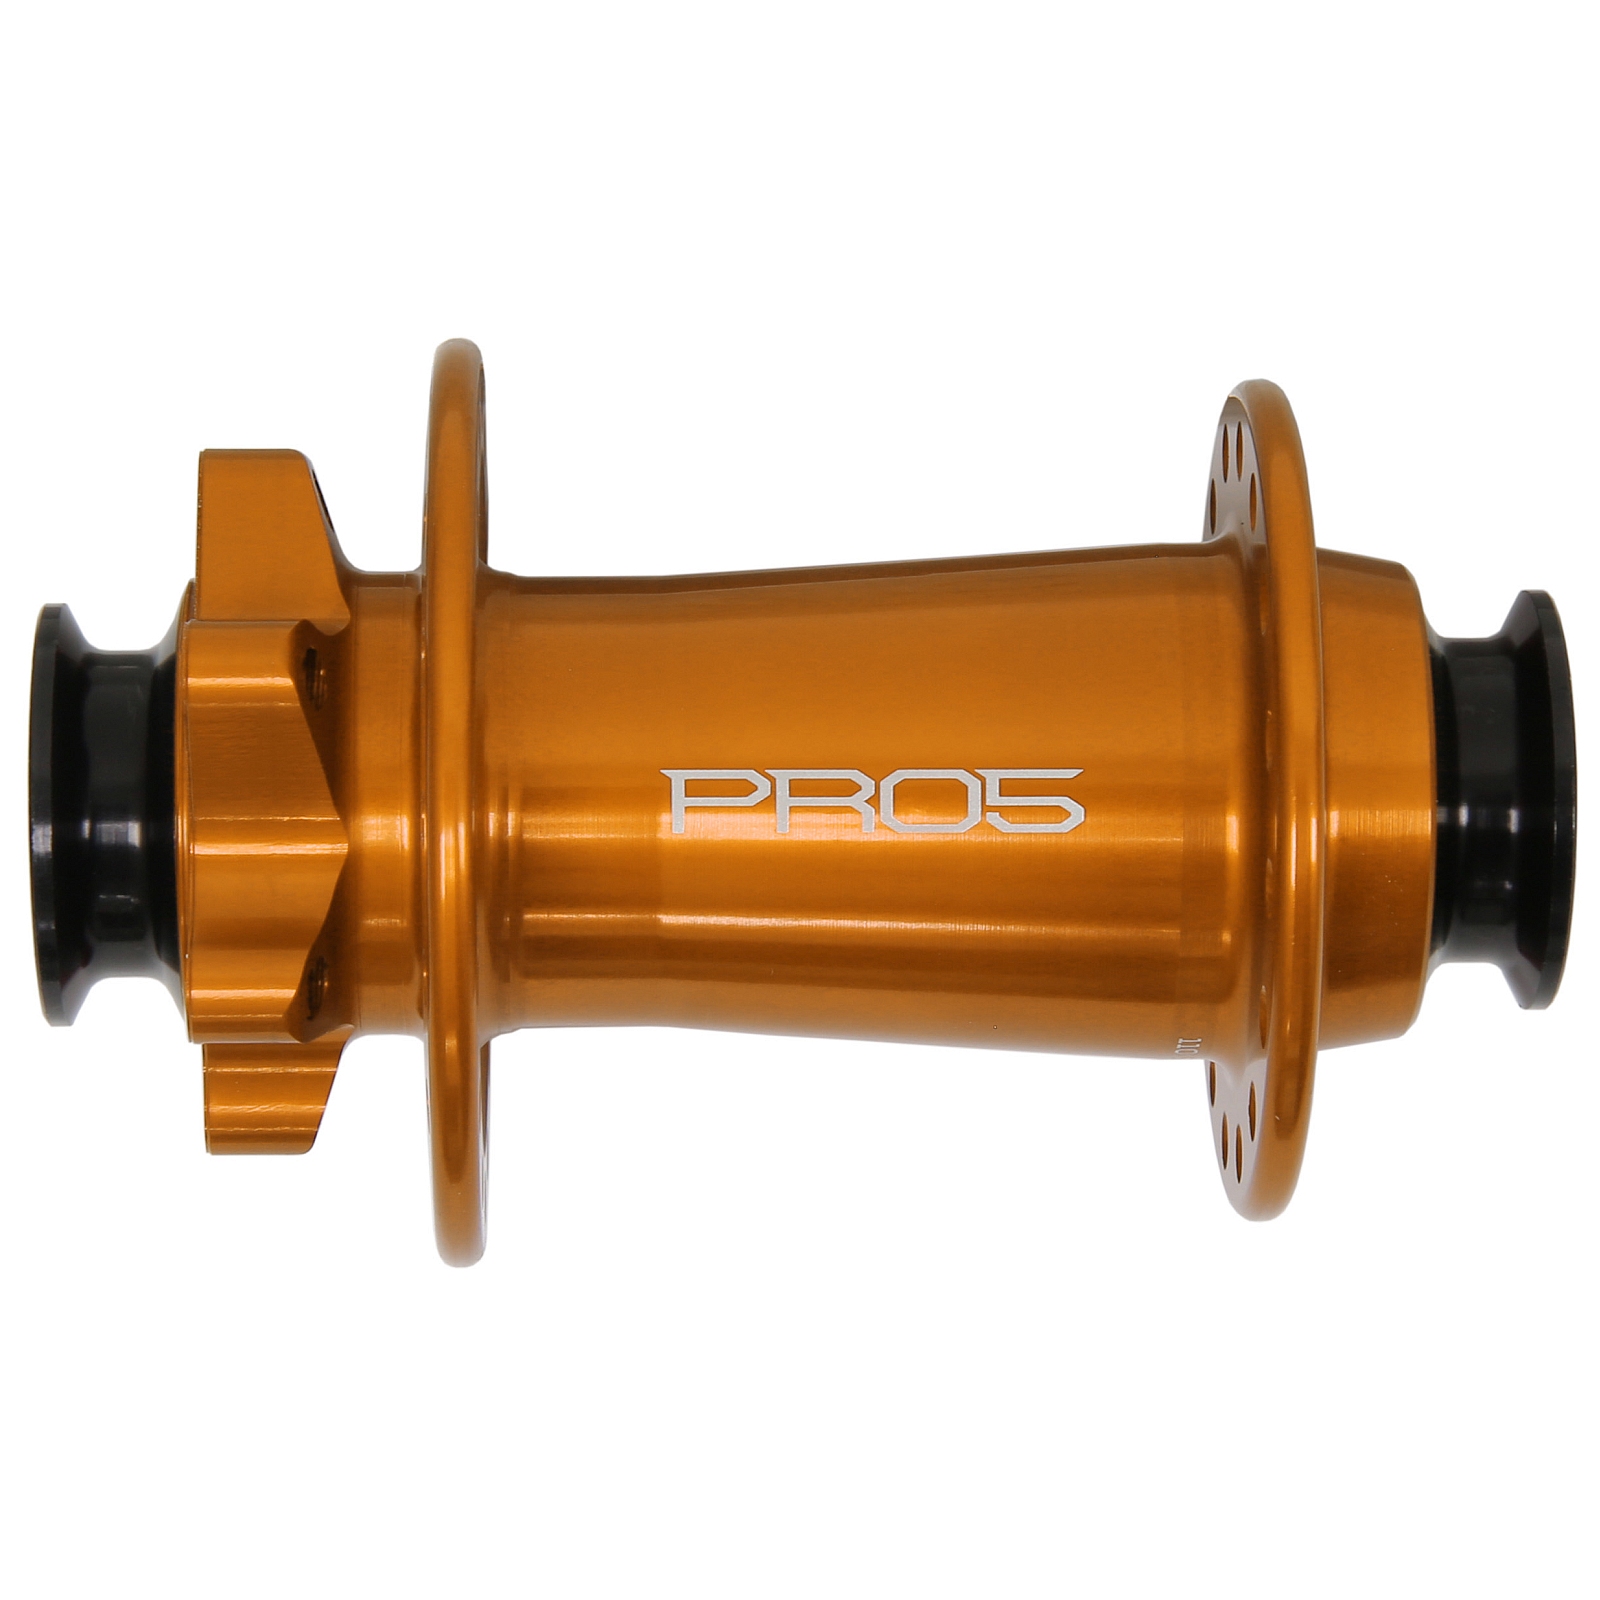 Productfoto van Hope Pro 5 Voorwielnaaf - 6-Bolt - 15x110mm Boost Torque - oranje